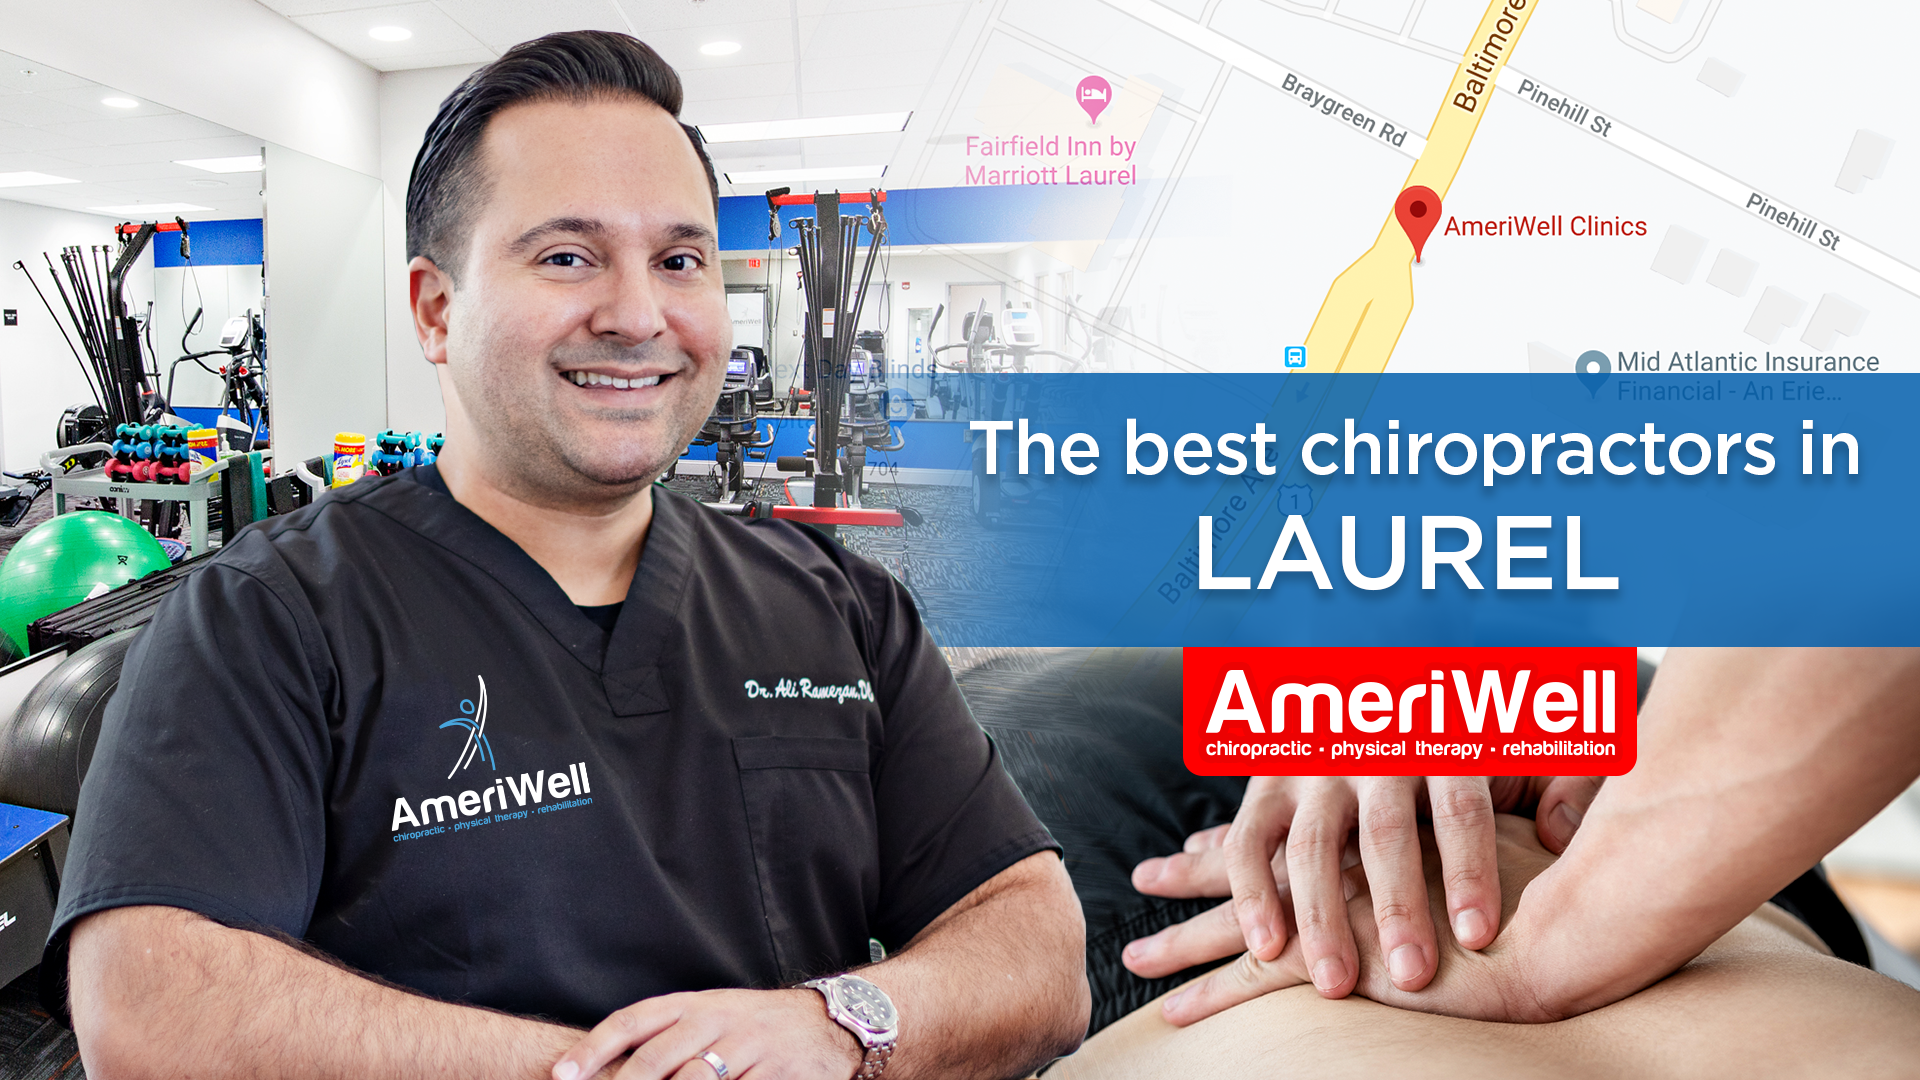 Laurel - Ameriwell Clinics the best chiropractors